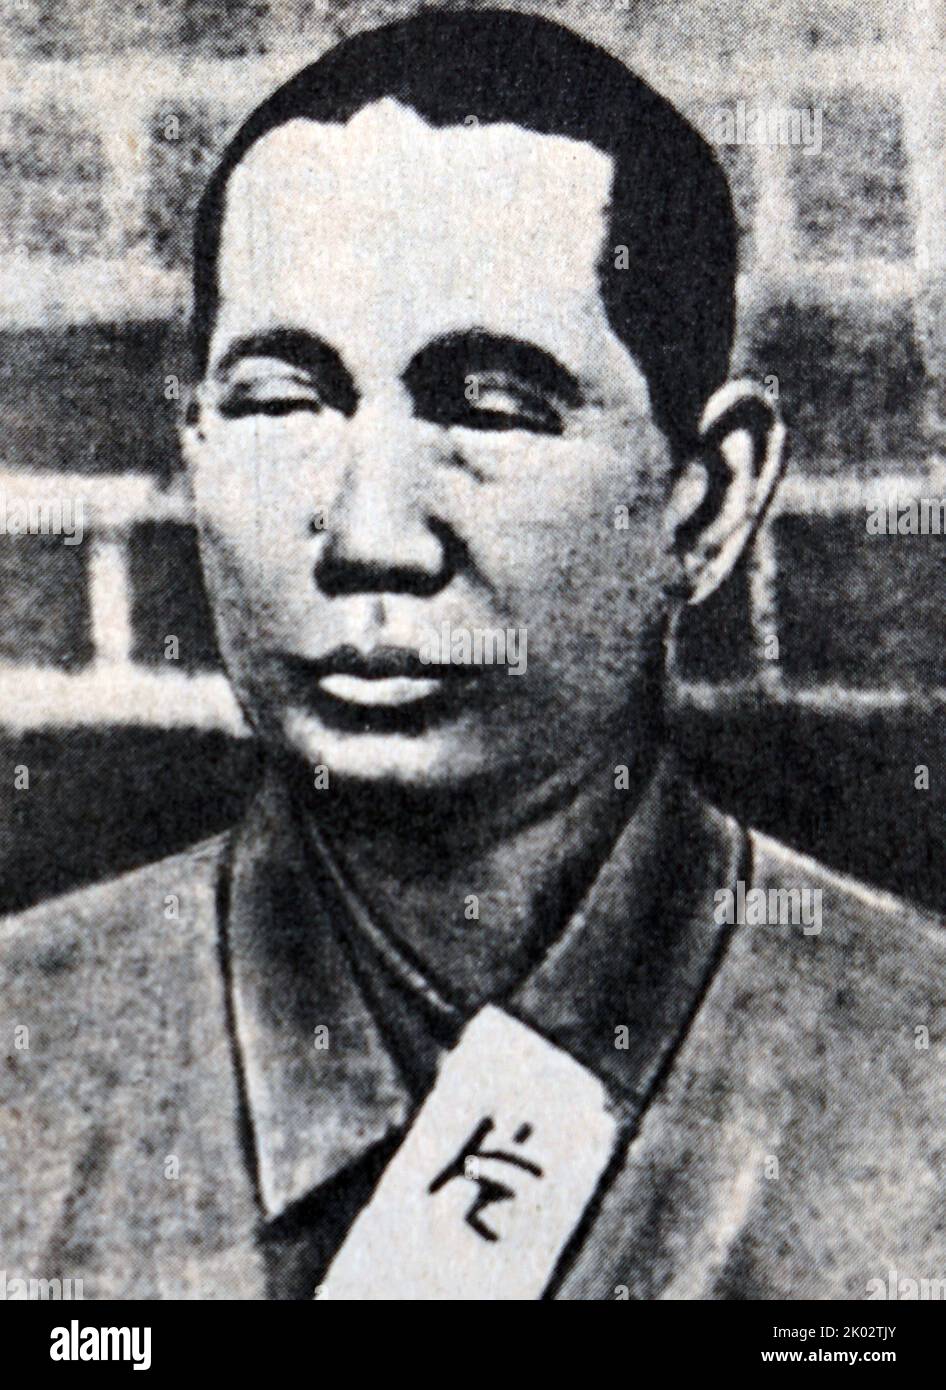 Katayama Sen (1859-1933), fotografato in una prigione. SEN Katayama era un primo attivista e giornalista politico marxista giapponese, uno dei membri originali del Partito comunista americano e co-fondatore, nel 1922, del Partito comunista giapponese Foto Stock